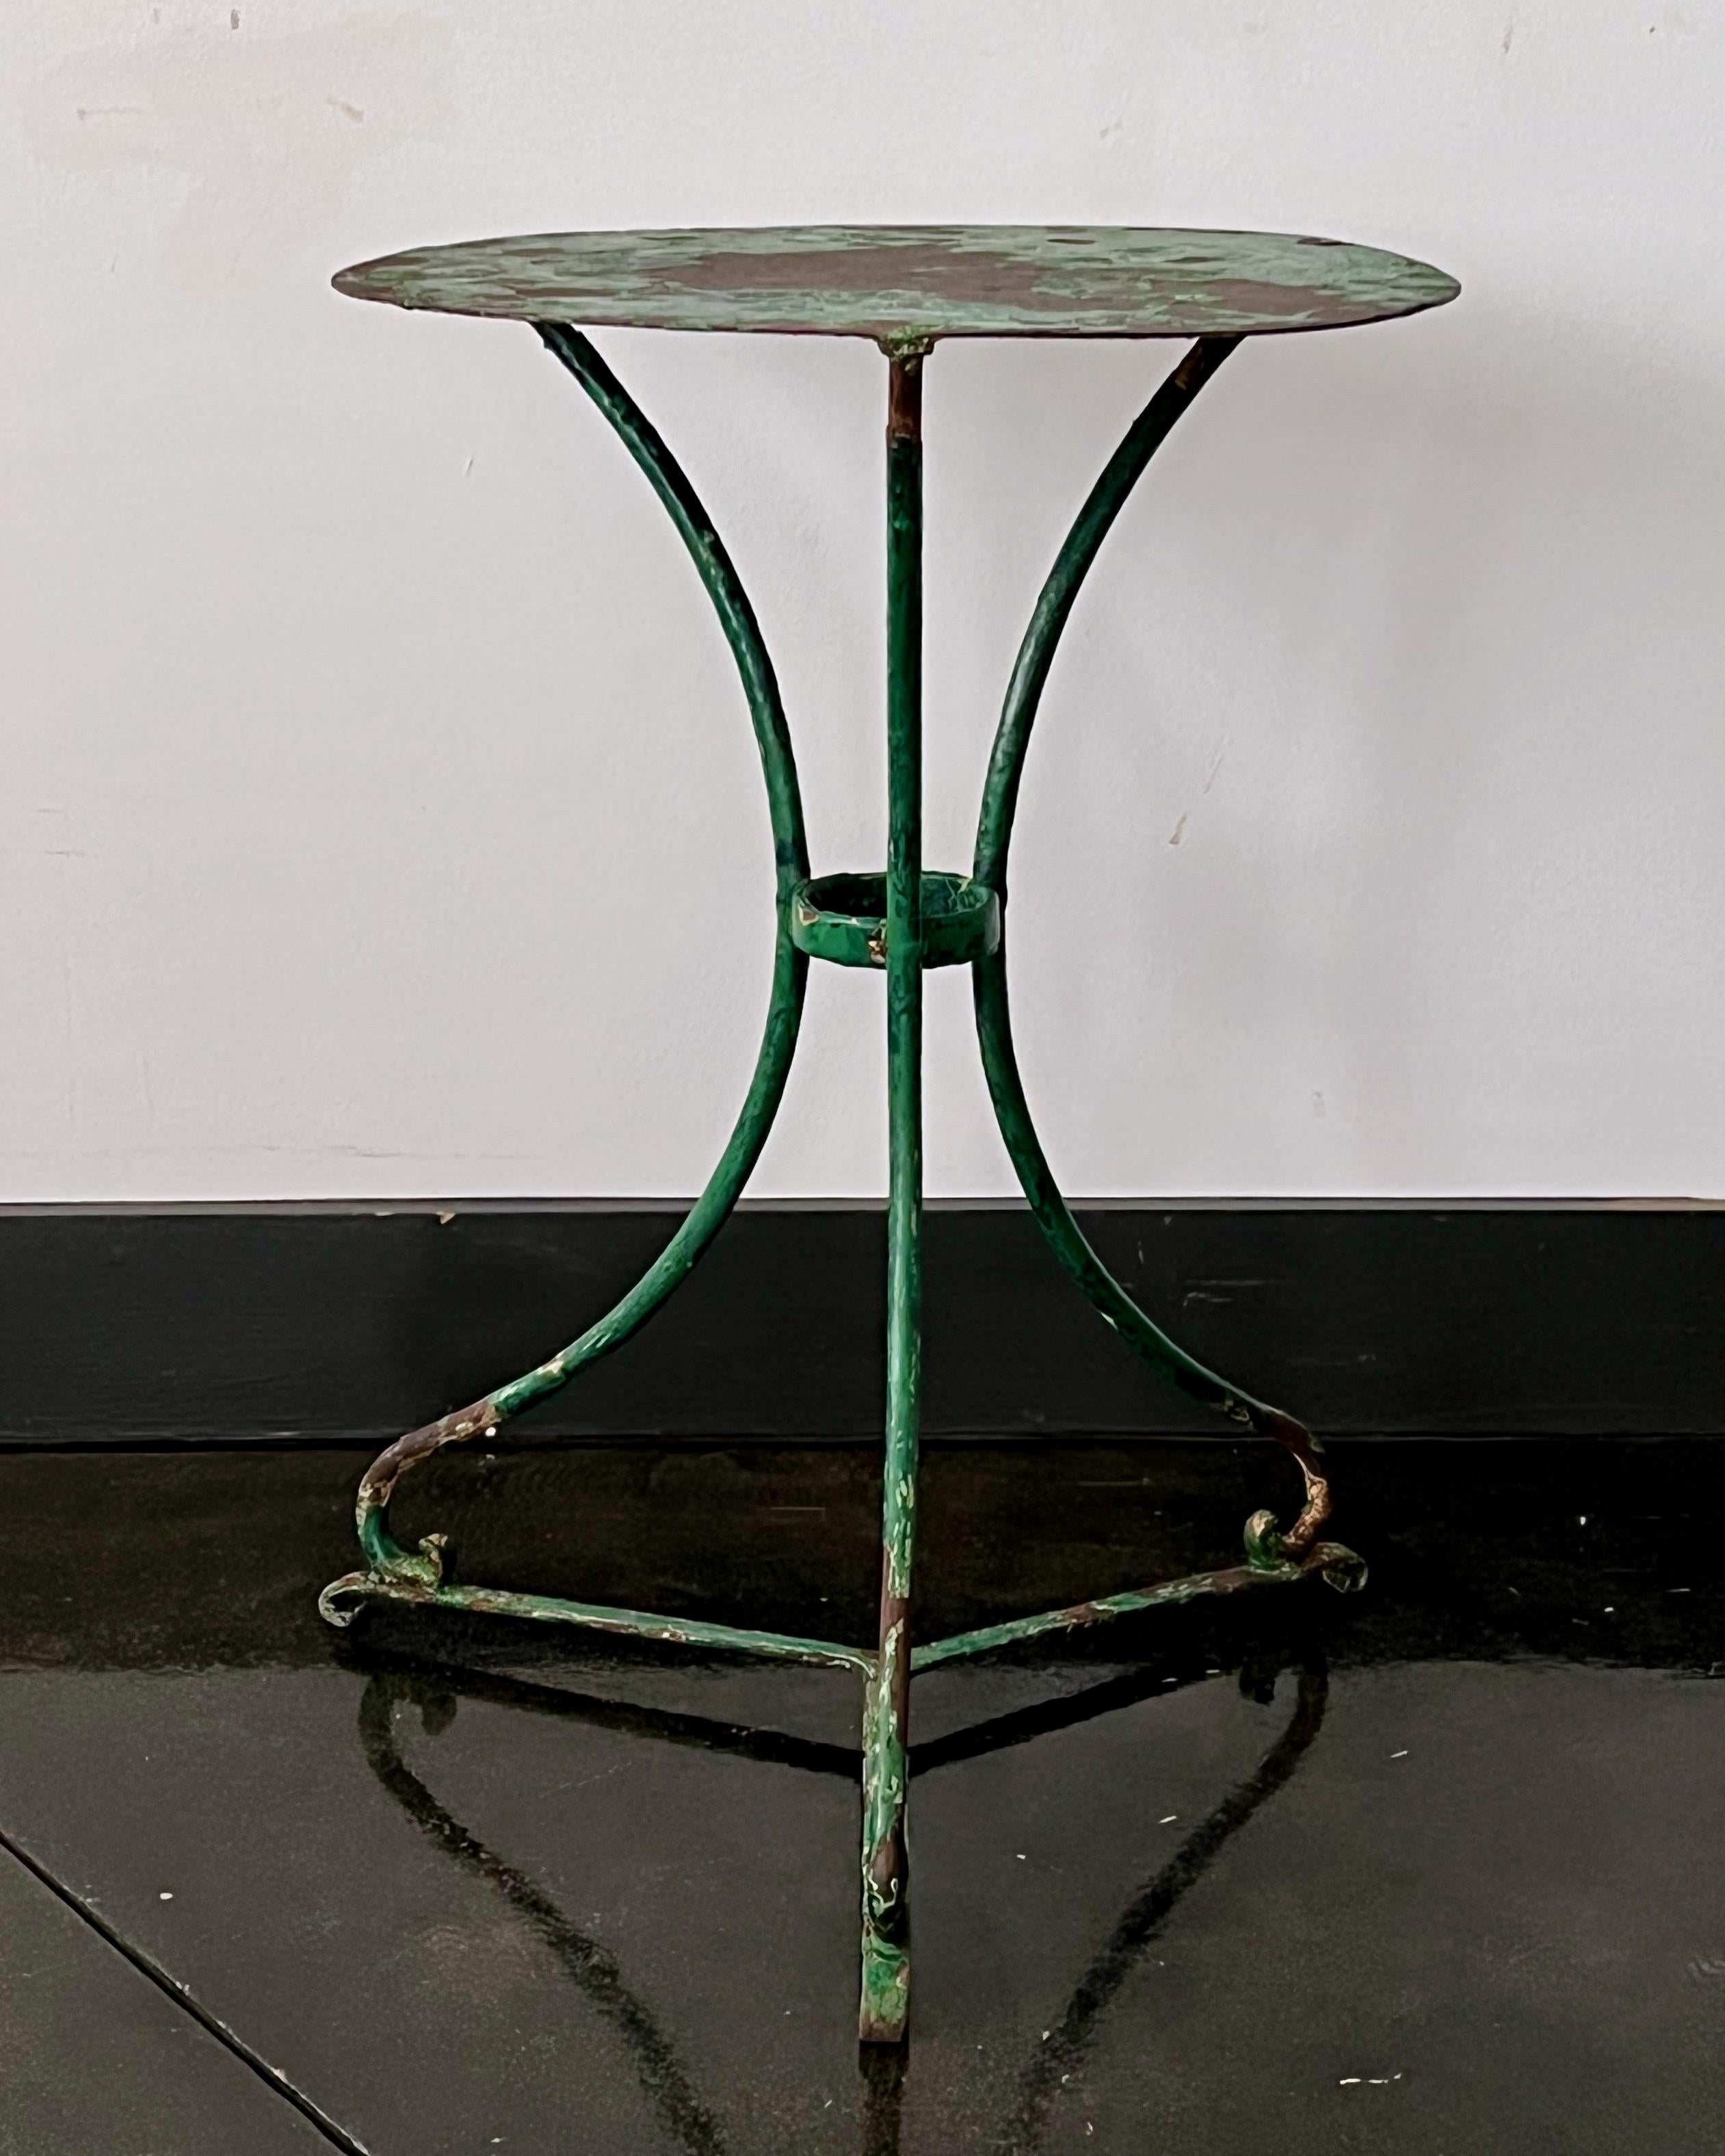 Französischer Bistrotisch vom Ende des 19. Jahrhunderts mit vielen alten, abgenutzten Schichten aus Grüntönen. Genietet, mit formschönen schmiedeeisernen Beinen und einer Metallplatte aus Stahl.